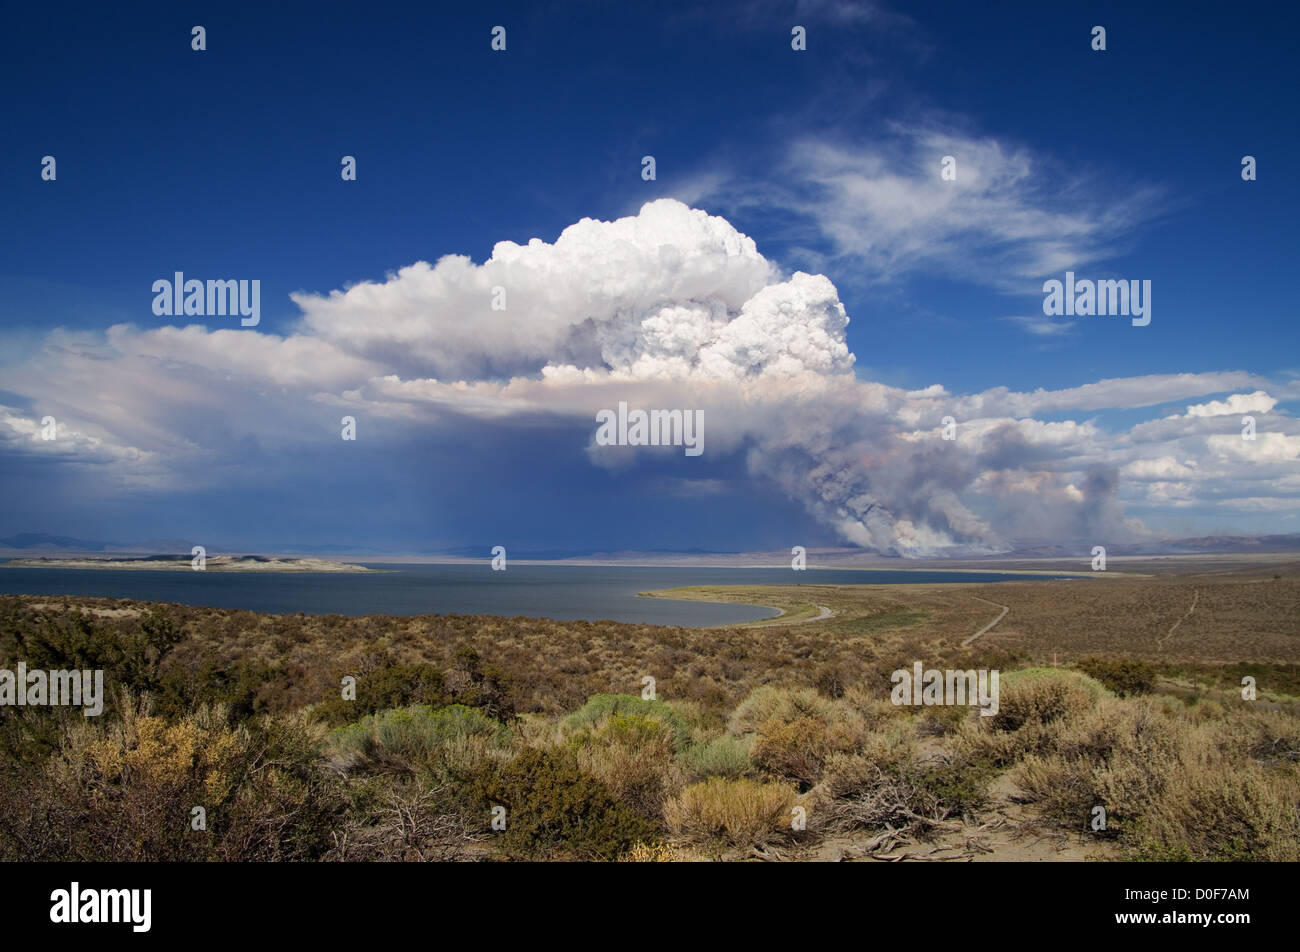 Y una nube de humo sube por encima de un bosque lejano fuego cerca del Lago Mono Foto de stock